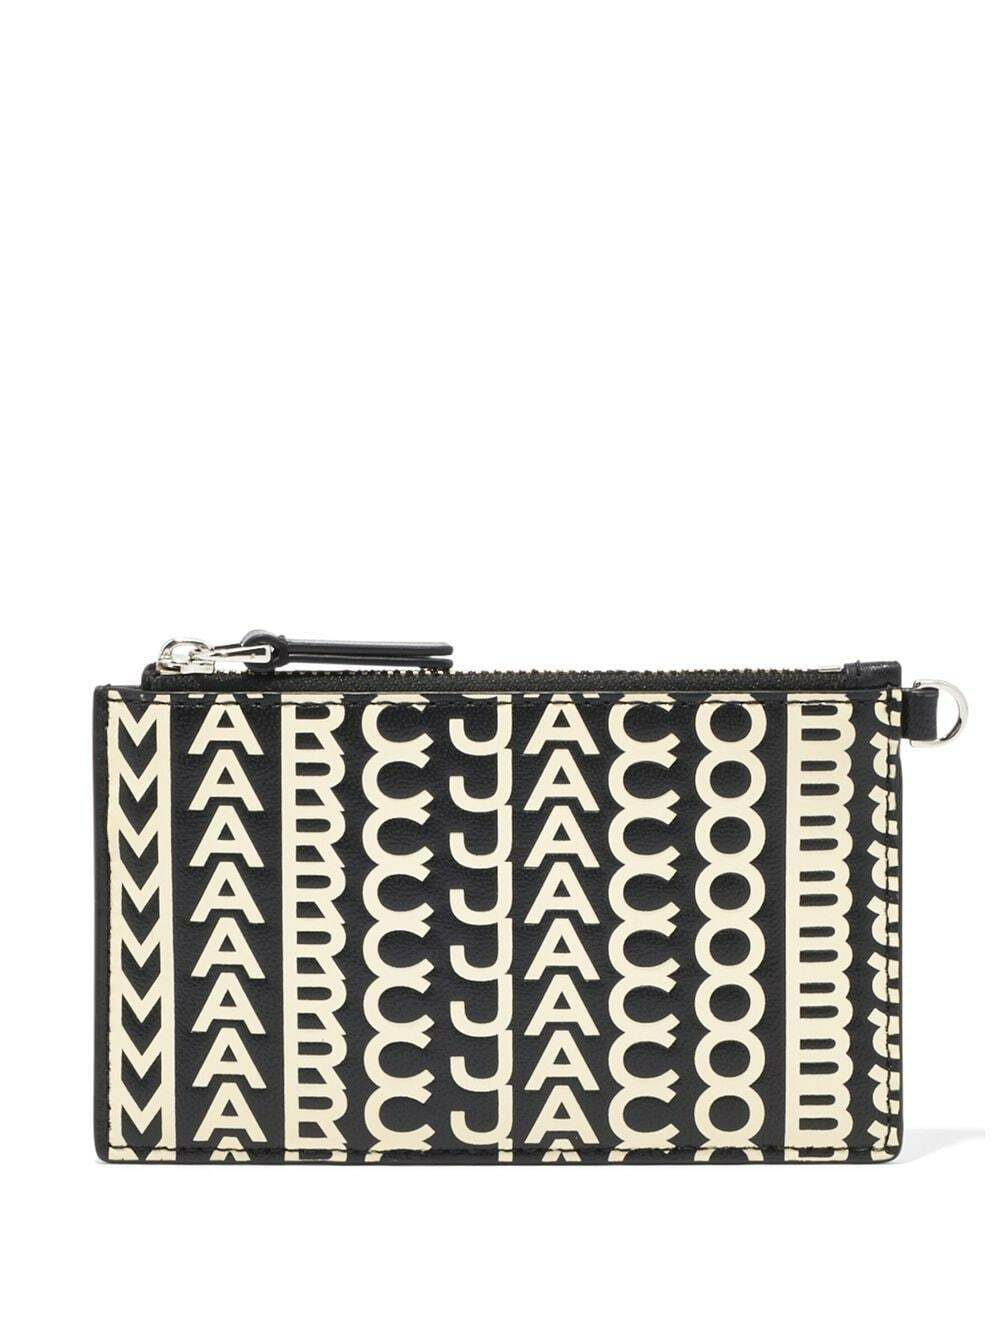 The Monogram Top Zip Wristlet, Marc Jacobs